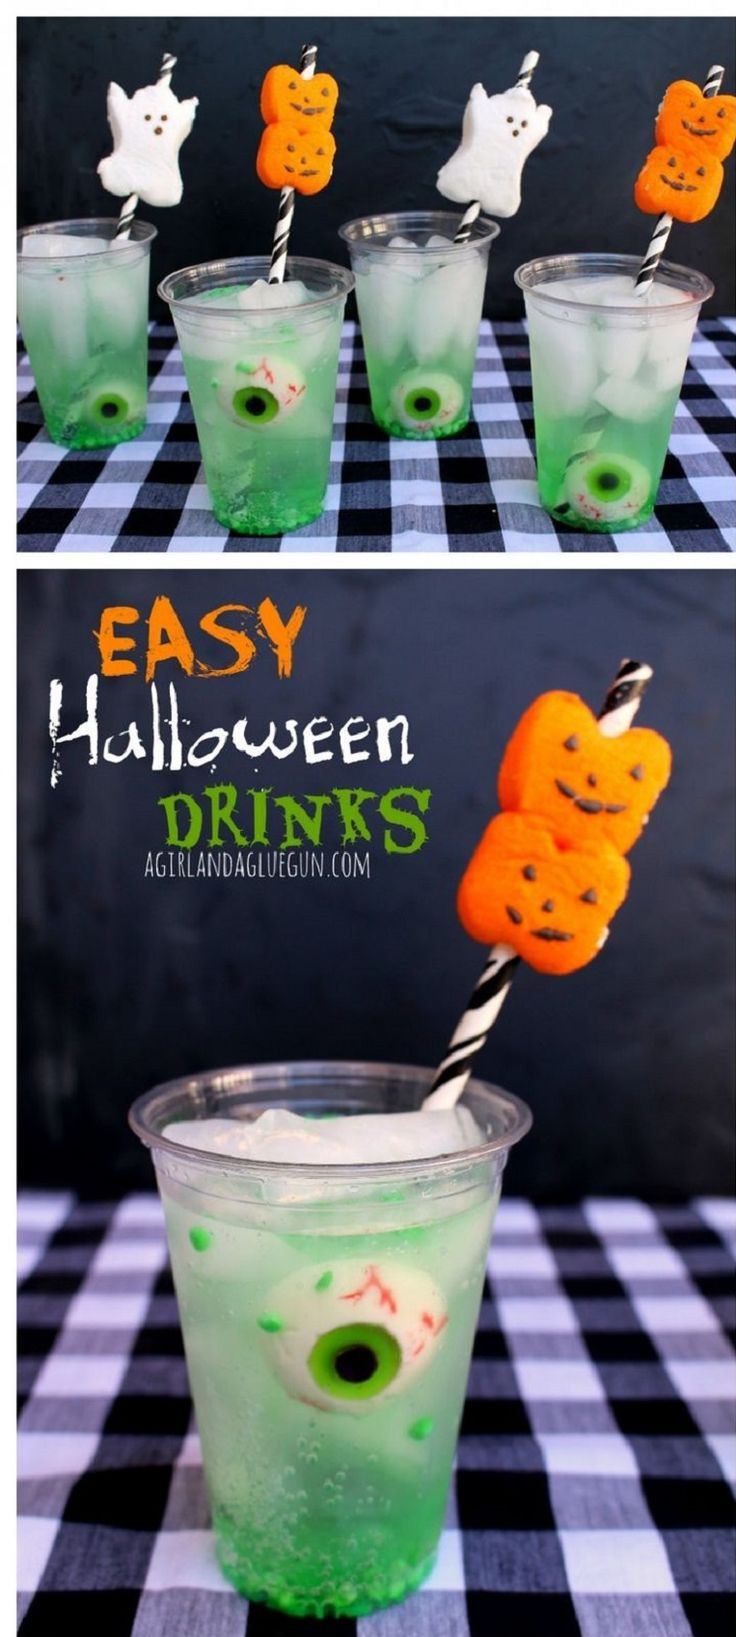 Halloween Drinks Pinterest
 Best 25 Halloween drinks ideas on Pinterest